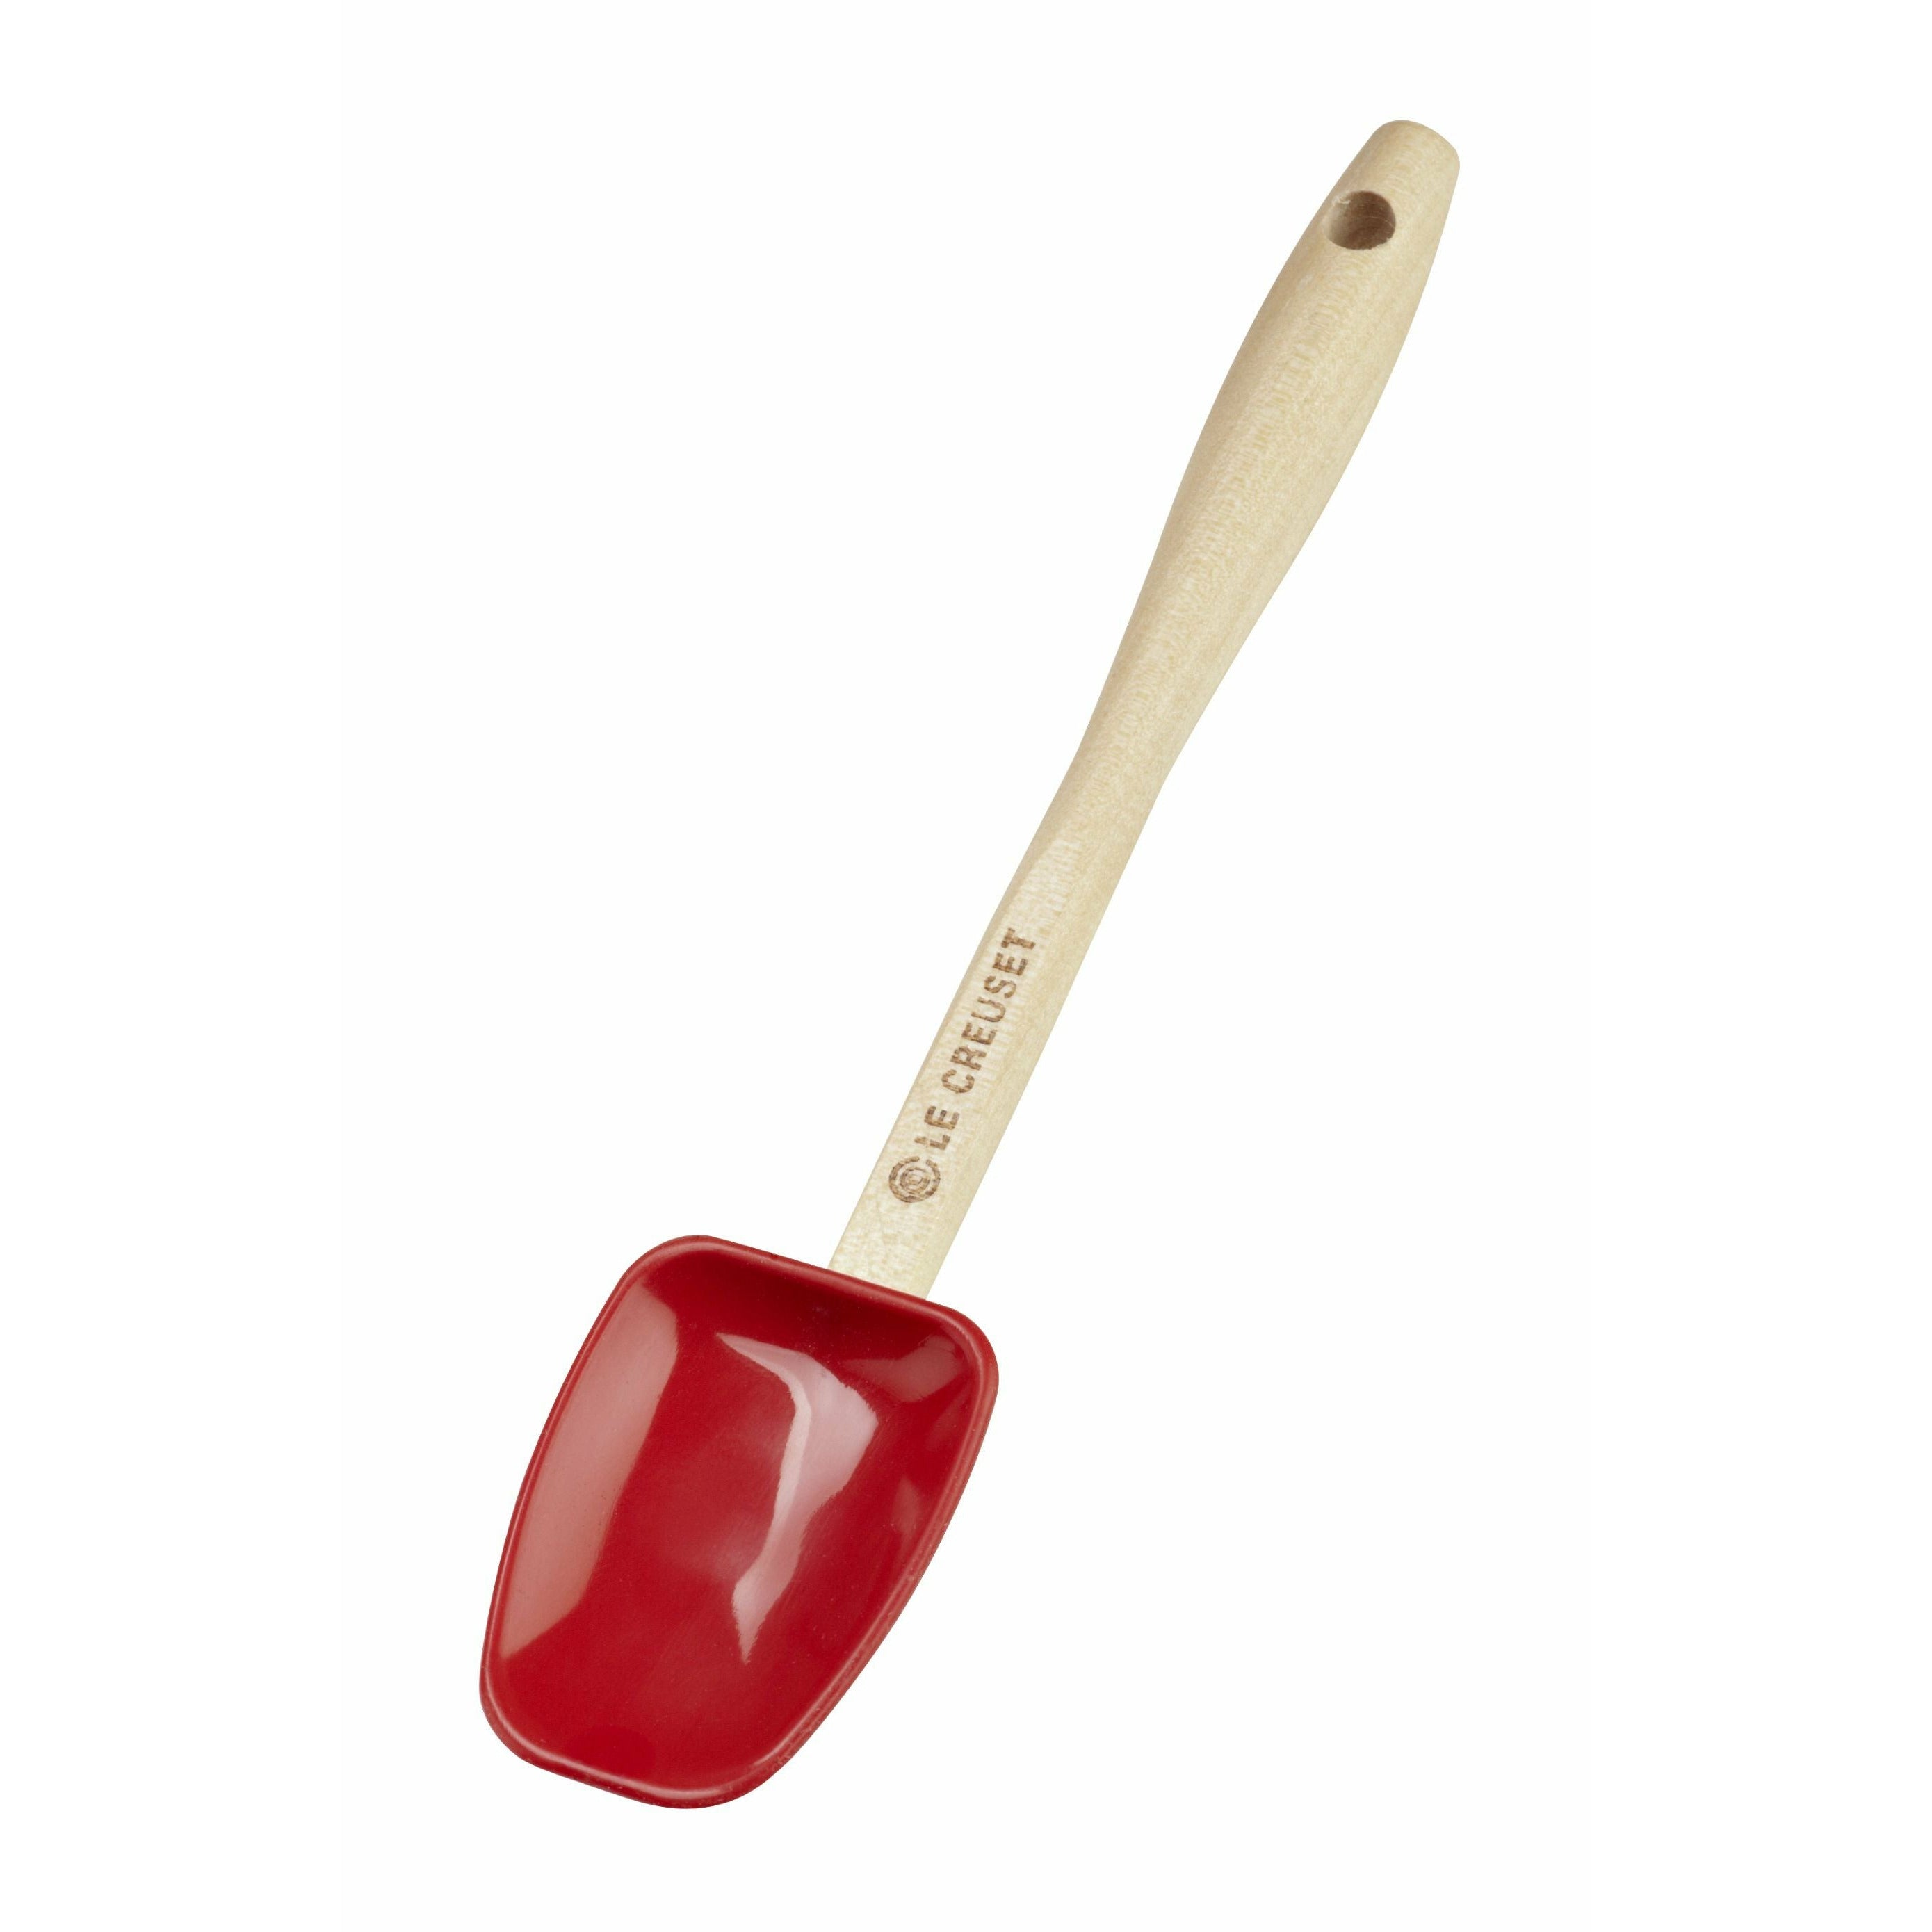 Le Creuset mini cucchiaio in legno classico, rosso ciliegia